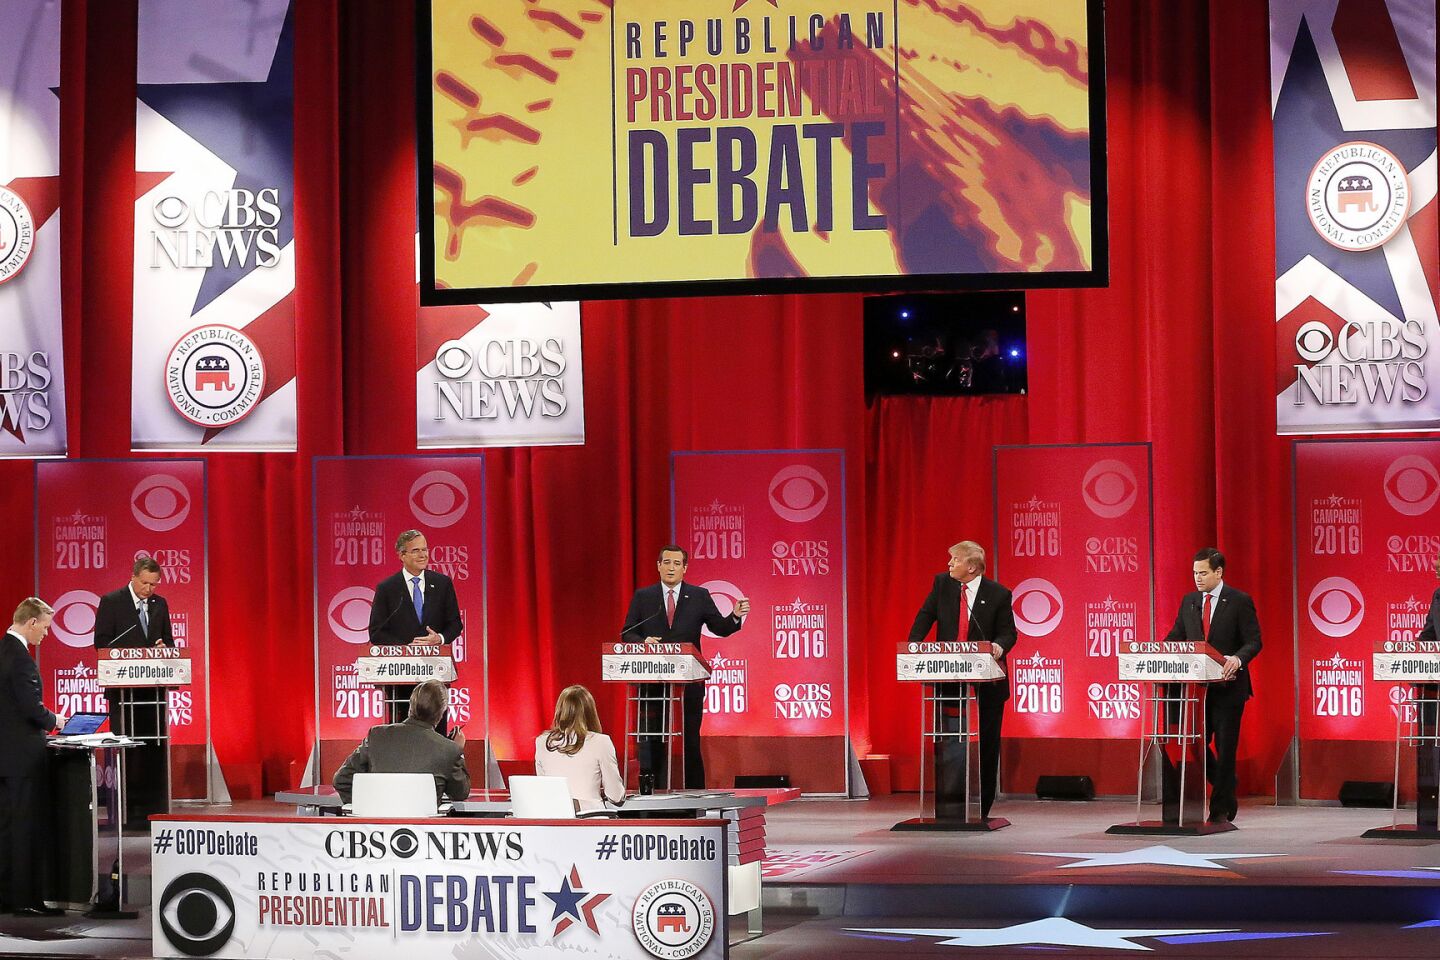 Republican debate in Greenville, S.C.